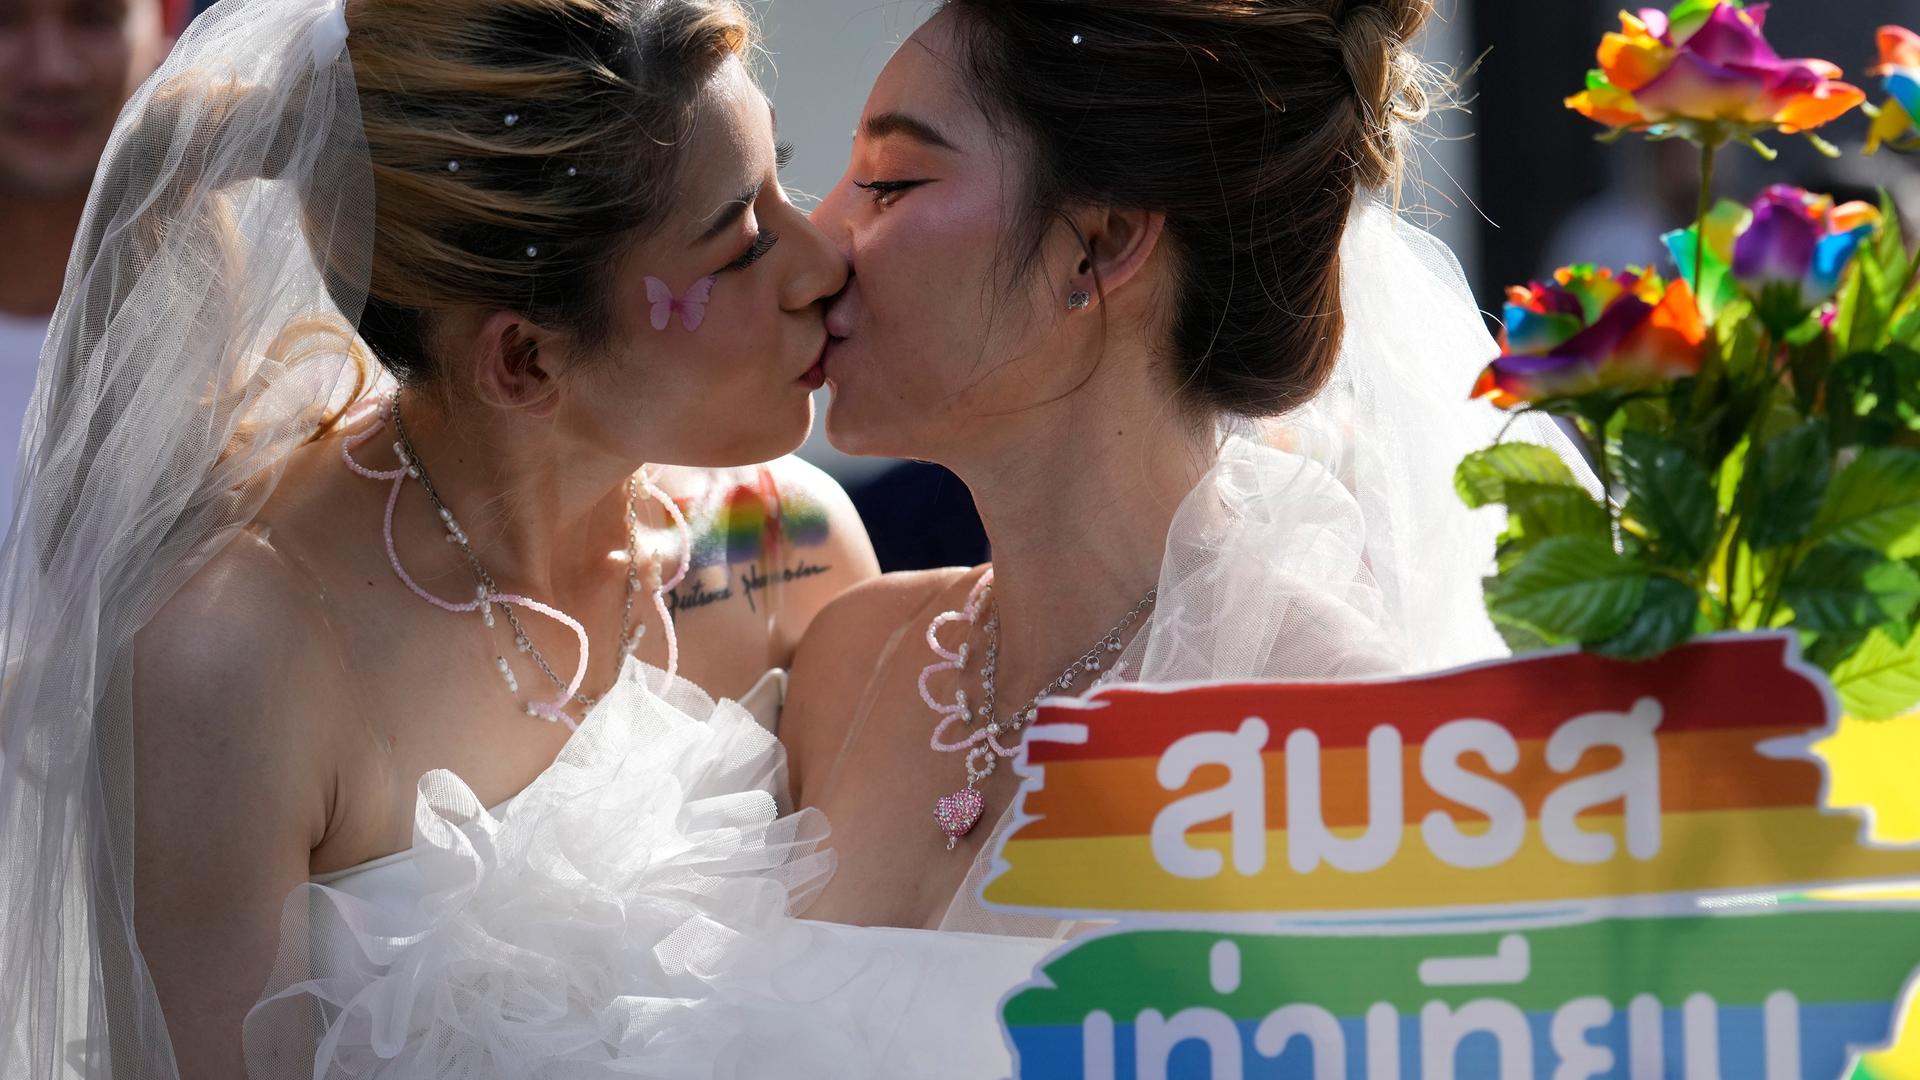 Bangkok: Zwei Frauen küssen sich während einer Pride-Parade in Bangkok, Thailand, während sie ein Plakat zur Unterstützung der Ehegleichheit halten.